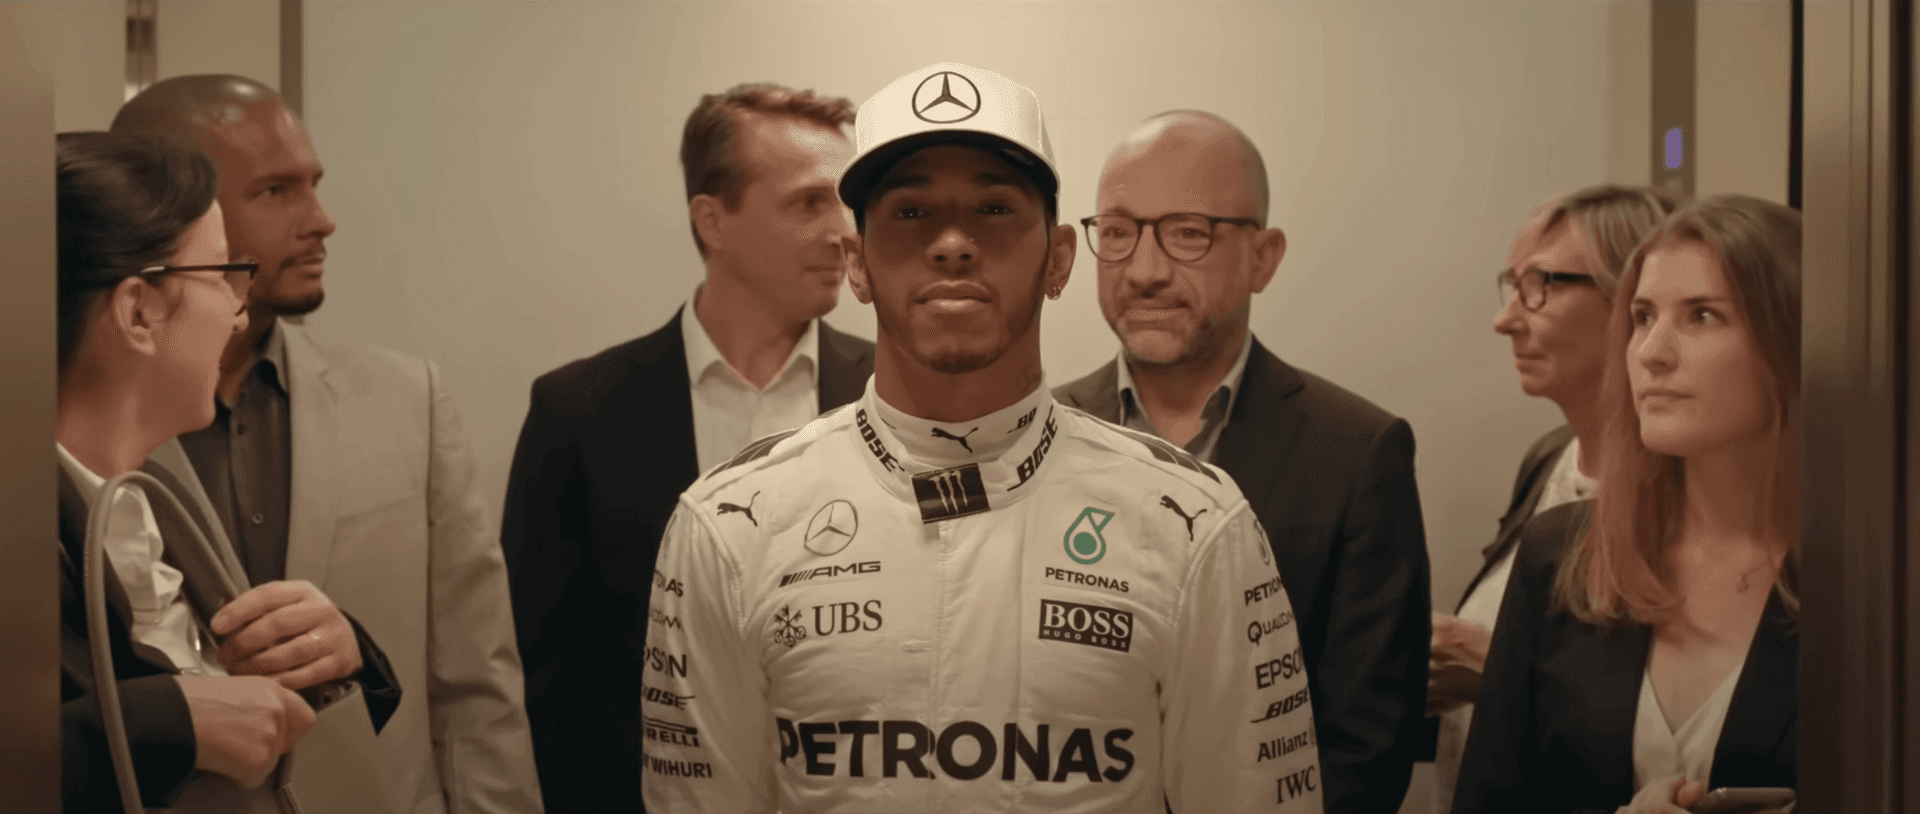 Lewis Hamilton x Allianz